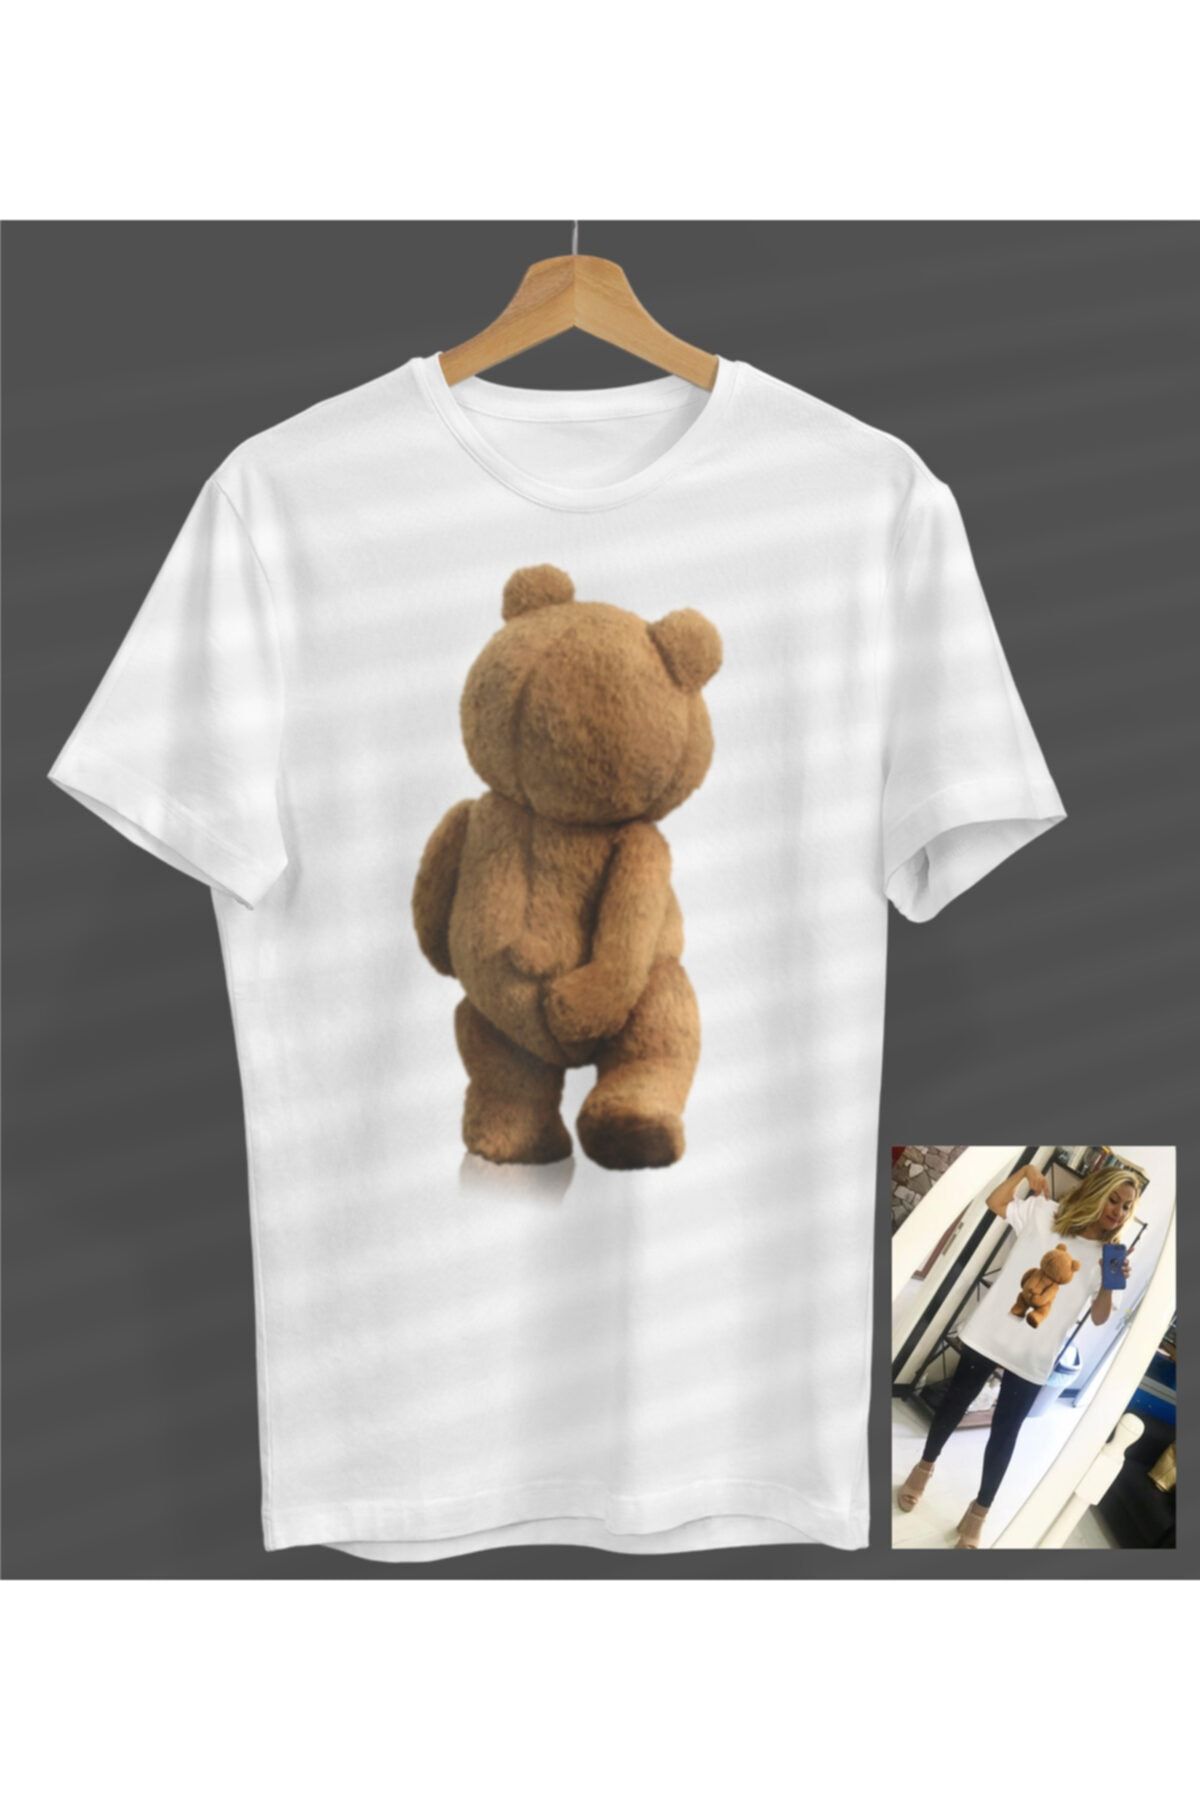 NOVUMUS Unisex Kadın-erkek Teddy Bear Özel Tasarım Tasarım Beyaz Yuvarlak Yaka T-shirt